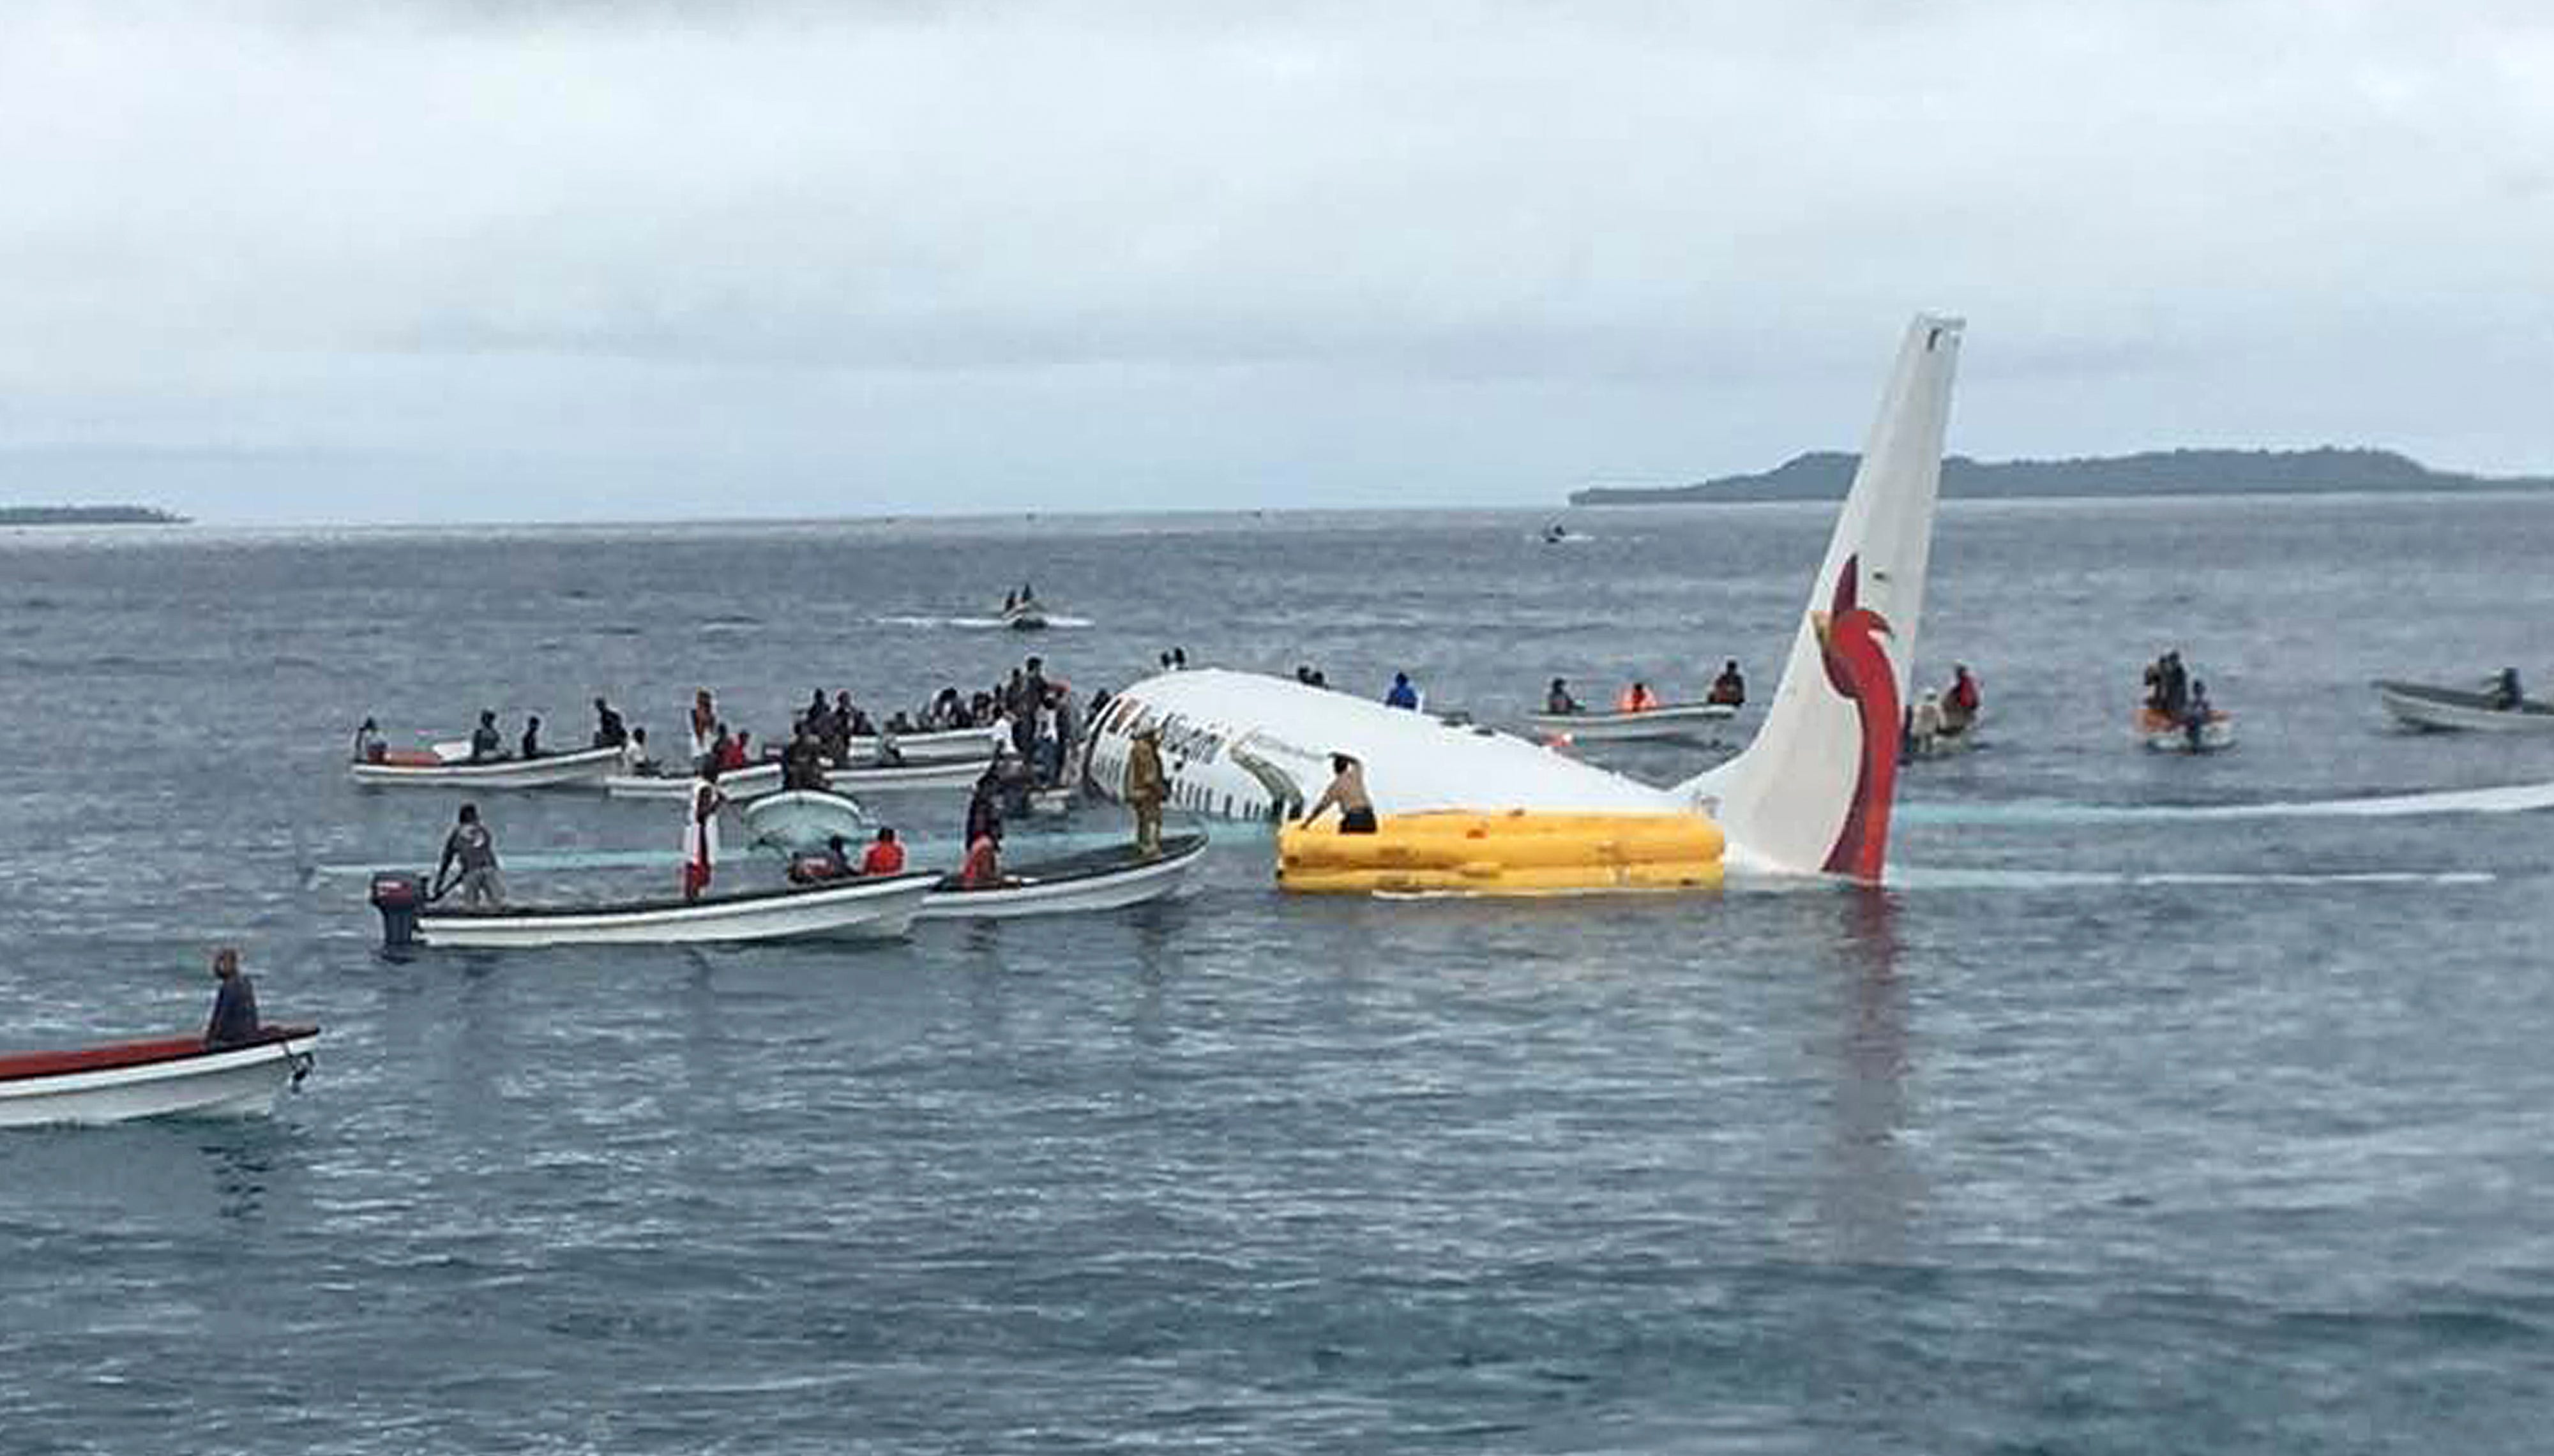 Самолет падает в воду. Аварийная посадка a320 на Гудзон запись. Самолёта Boeing 737 посадка на воду. Самолет Air France, который упал в Атлантический океан в 2009 году. Самолет упал в воду.